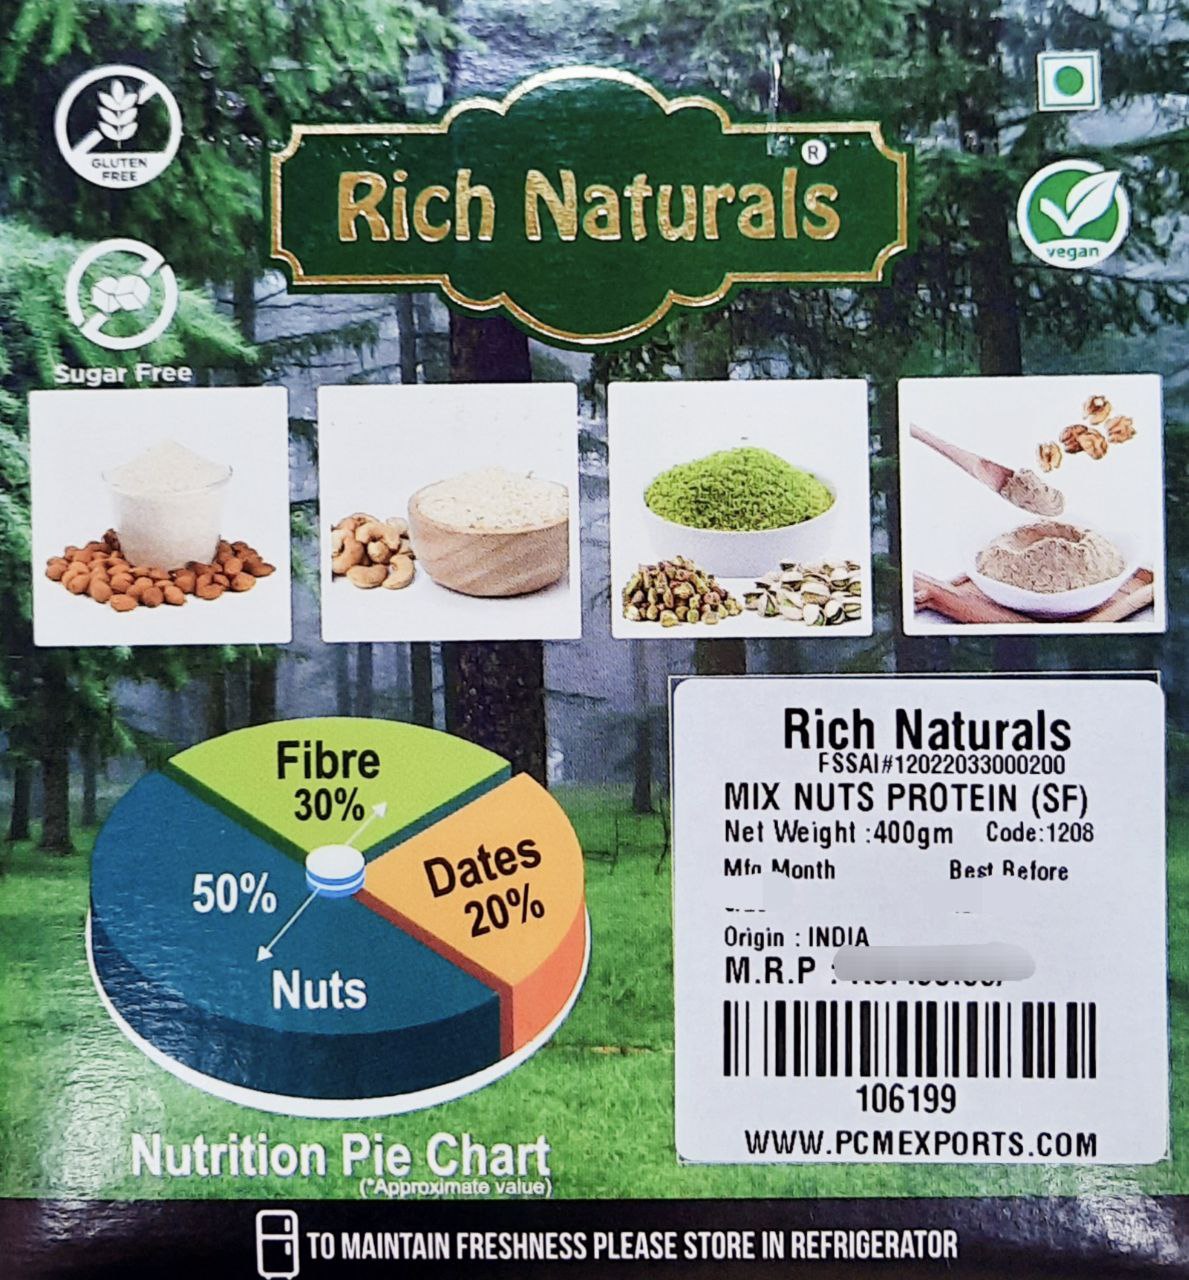 RICH NATURALS Mix Nuts Protein Powder (100% Powder Form)